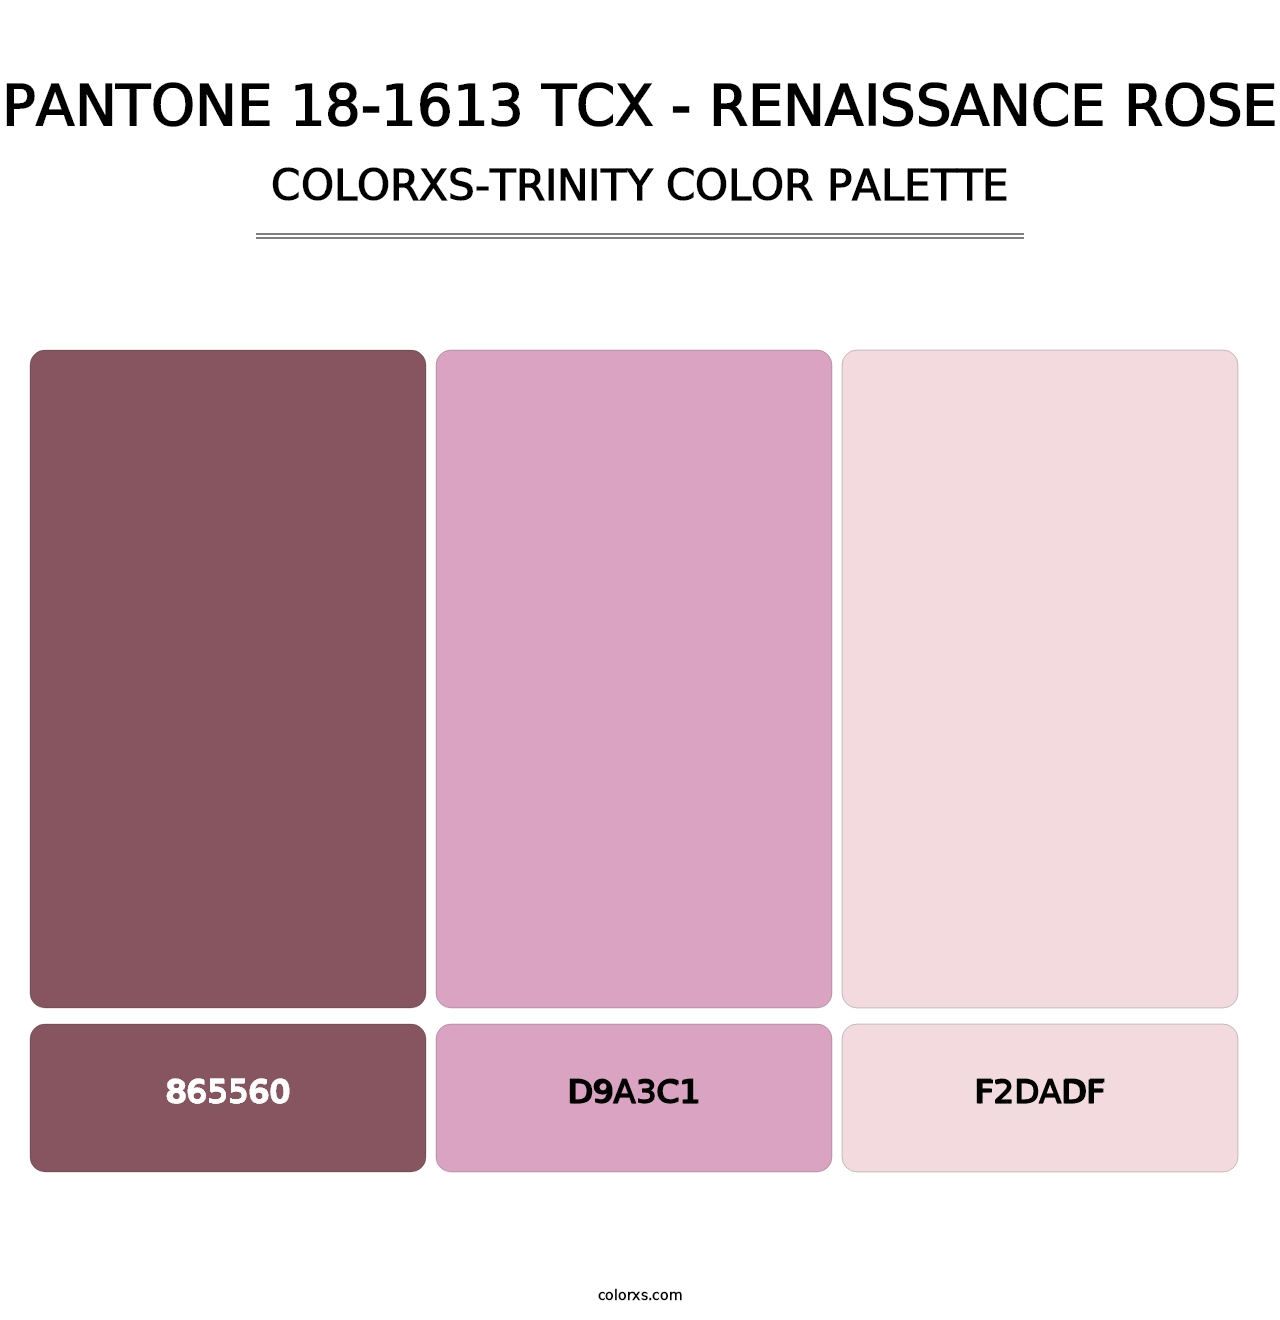 PANTONE 18-1613 TCX - Renaissance Rose - Colorxs Trinity Palette